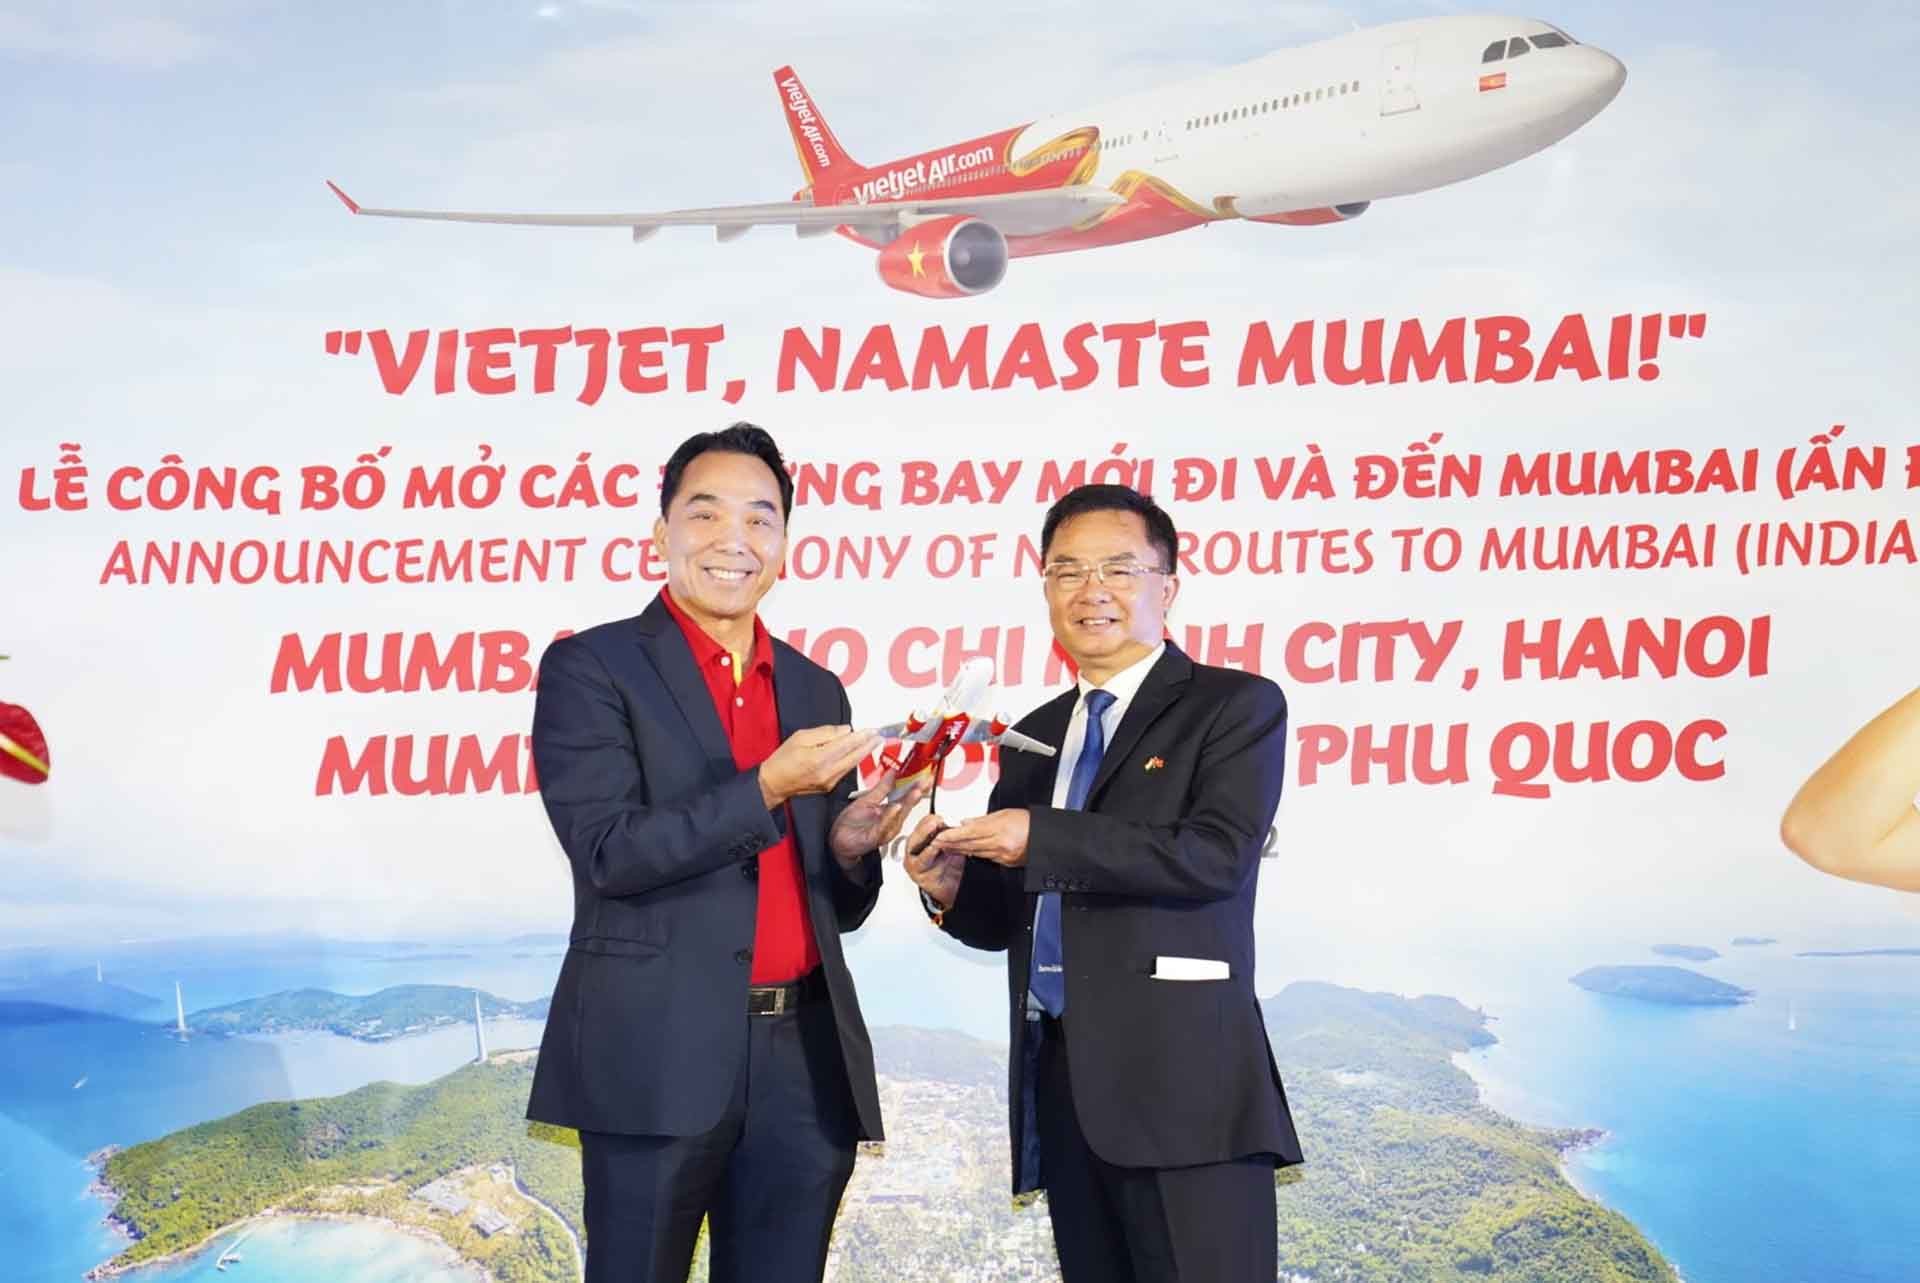 Ông Nguyễn Anh Tuấn, Thành viên Hội đồng quản tri Vietjet tặng quà lưu niệm cho ông Hoàng Tùng, Tổng Lãnh sự Việt Nam tại Mumbai.